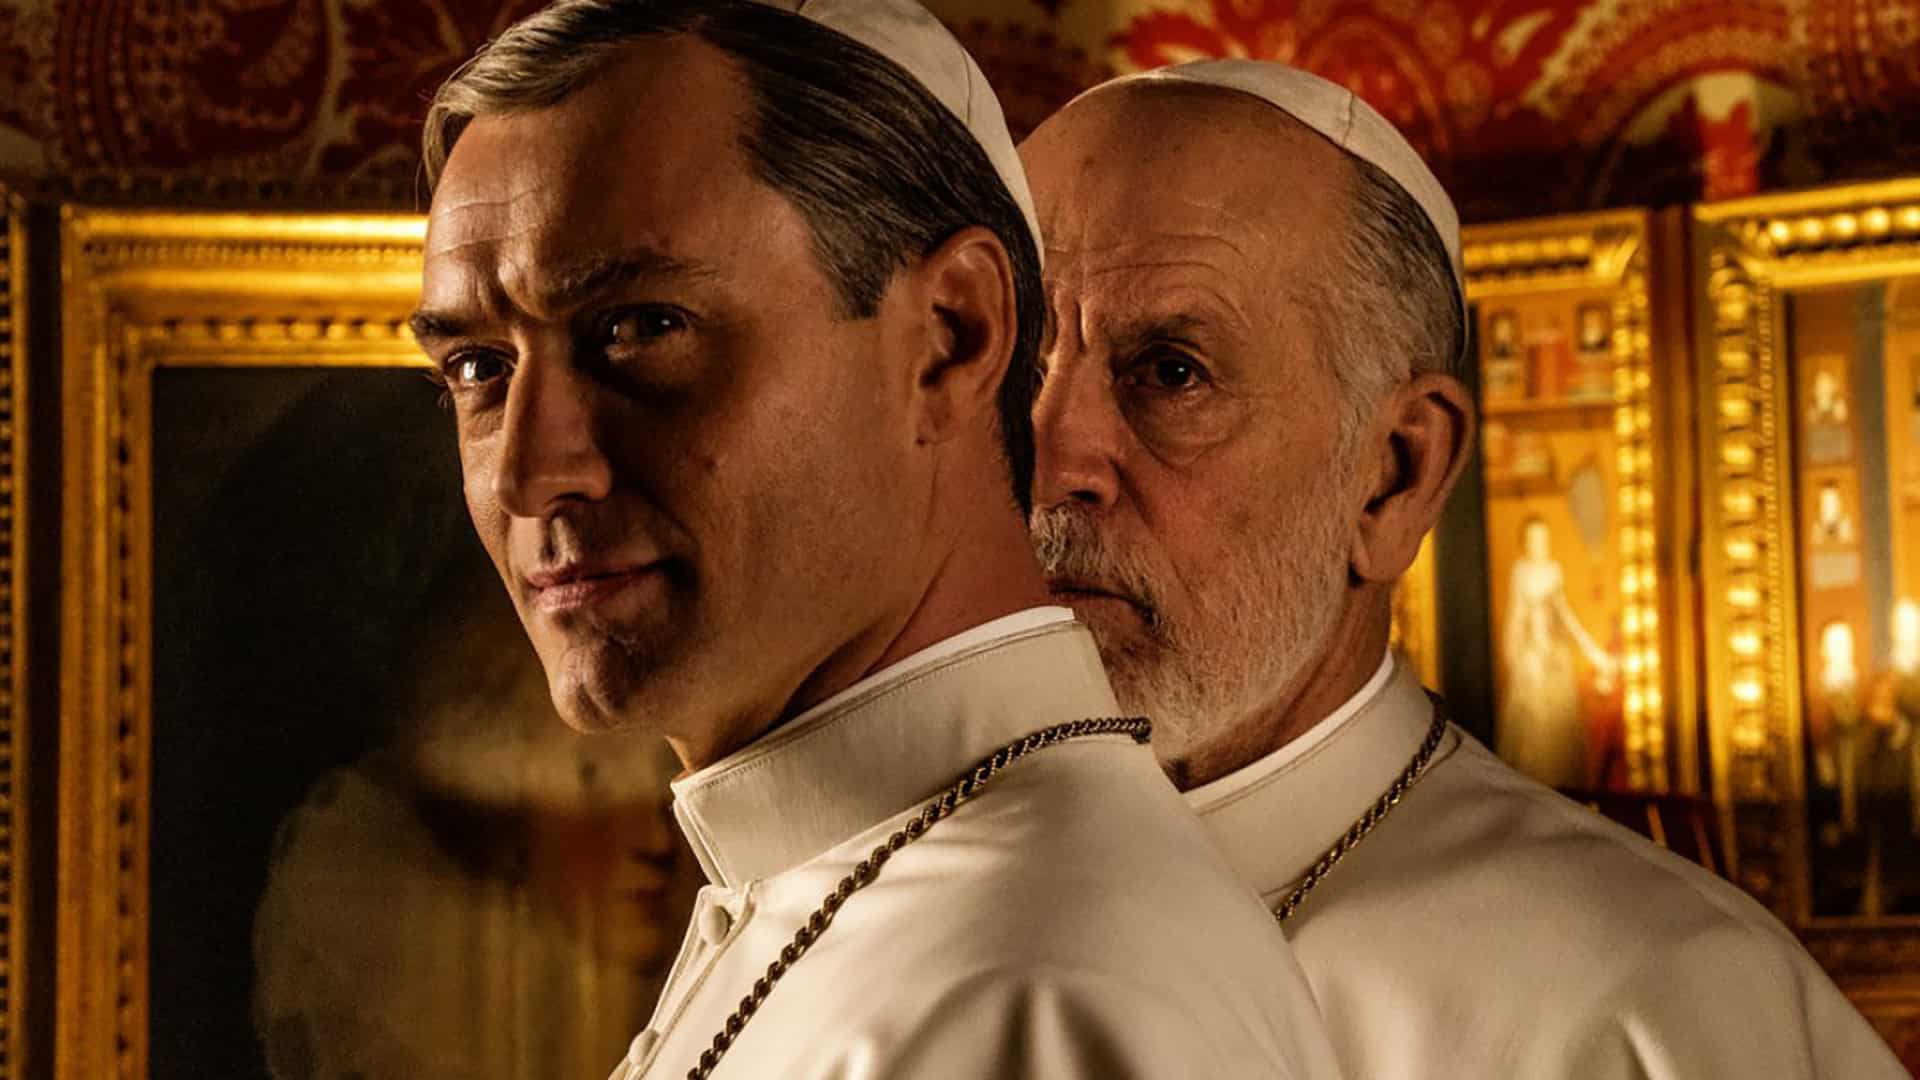 The New Pope: la seconda stagione completa arriva al cinema